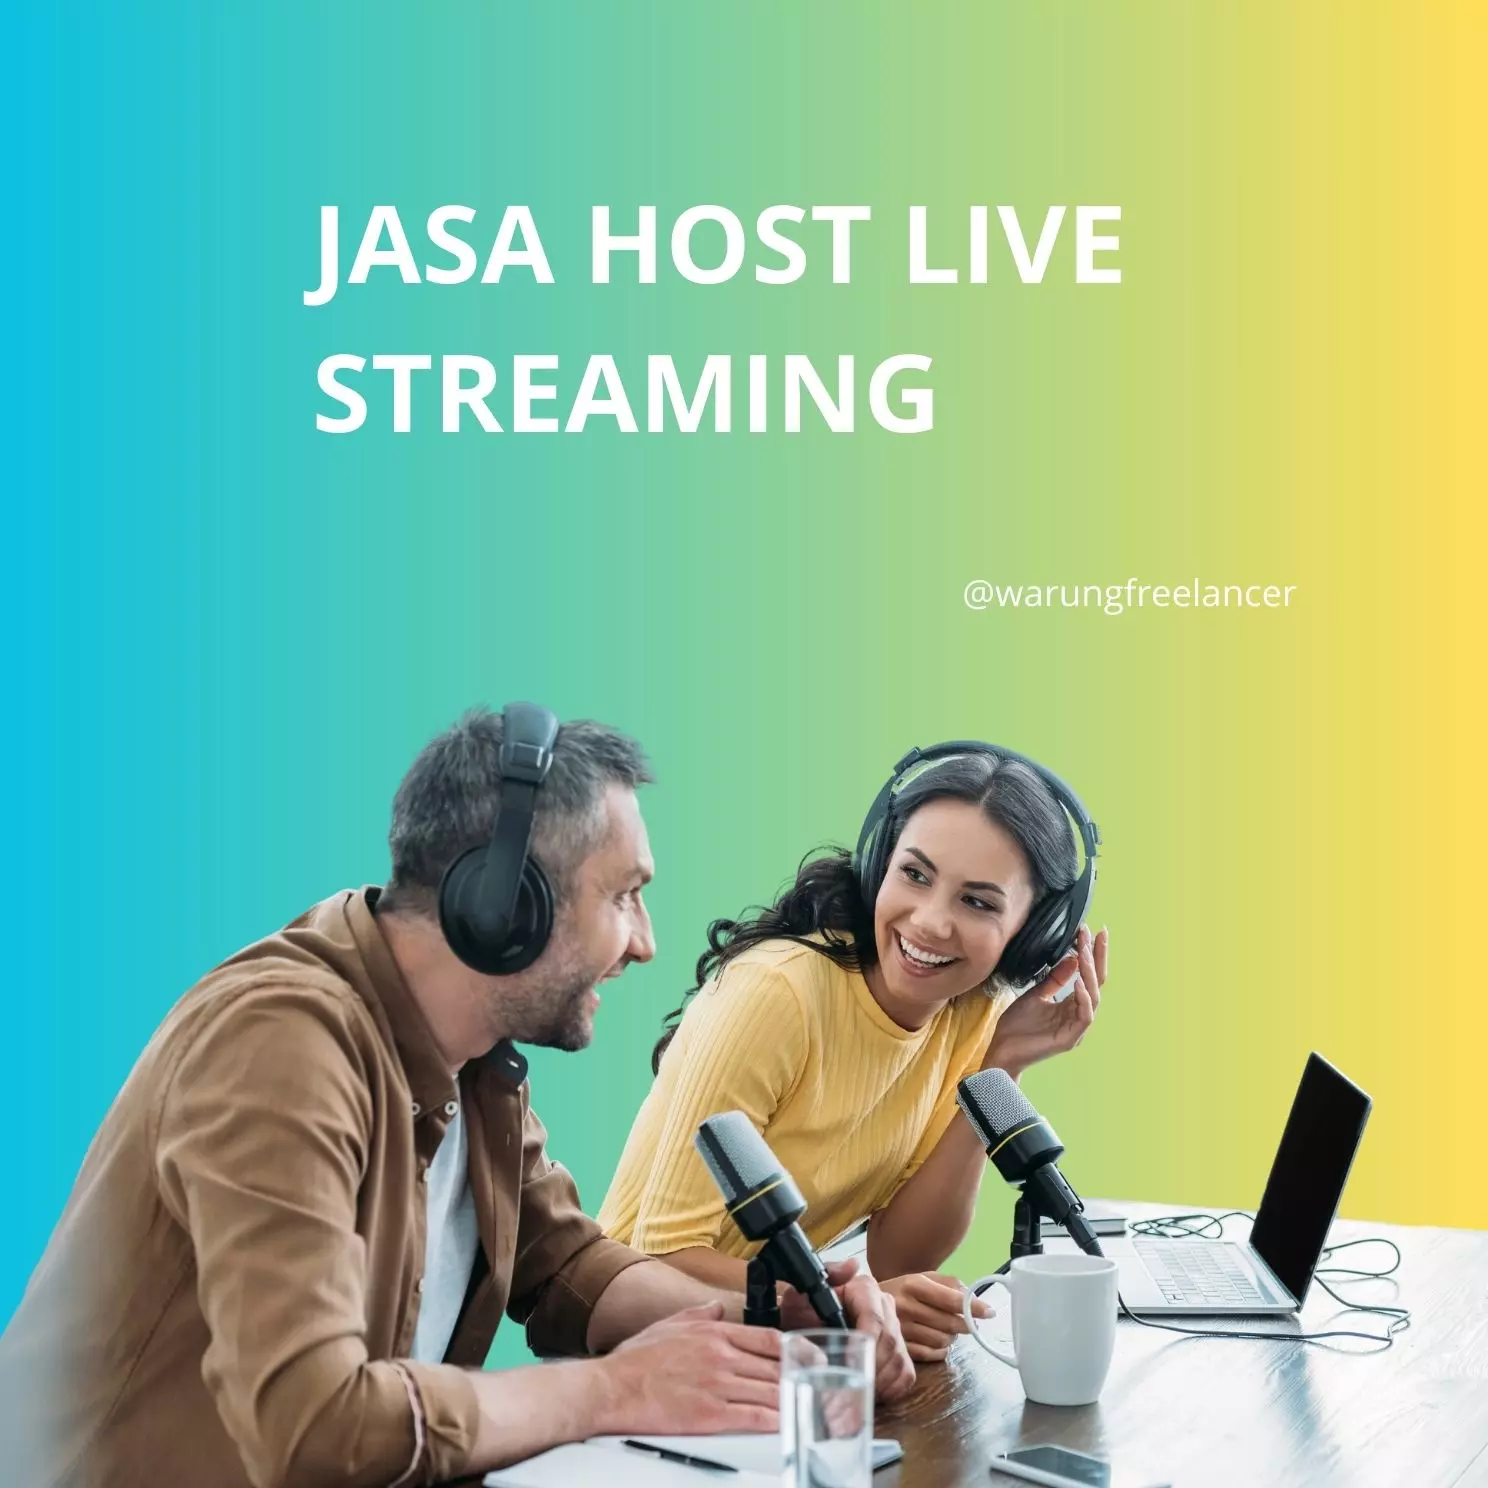 Pengertian Jasa Host Live Streaming